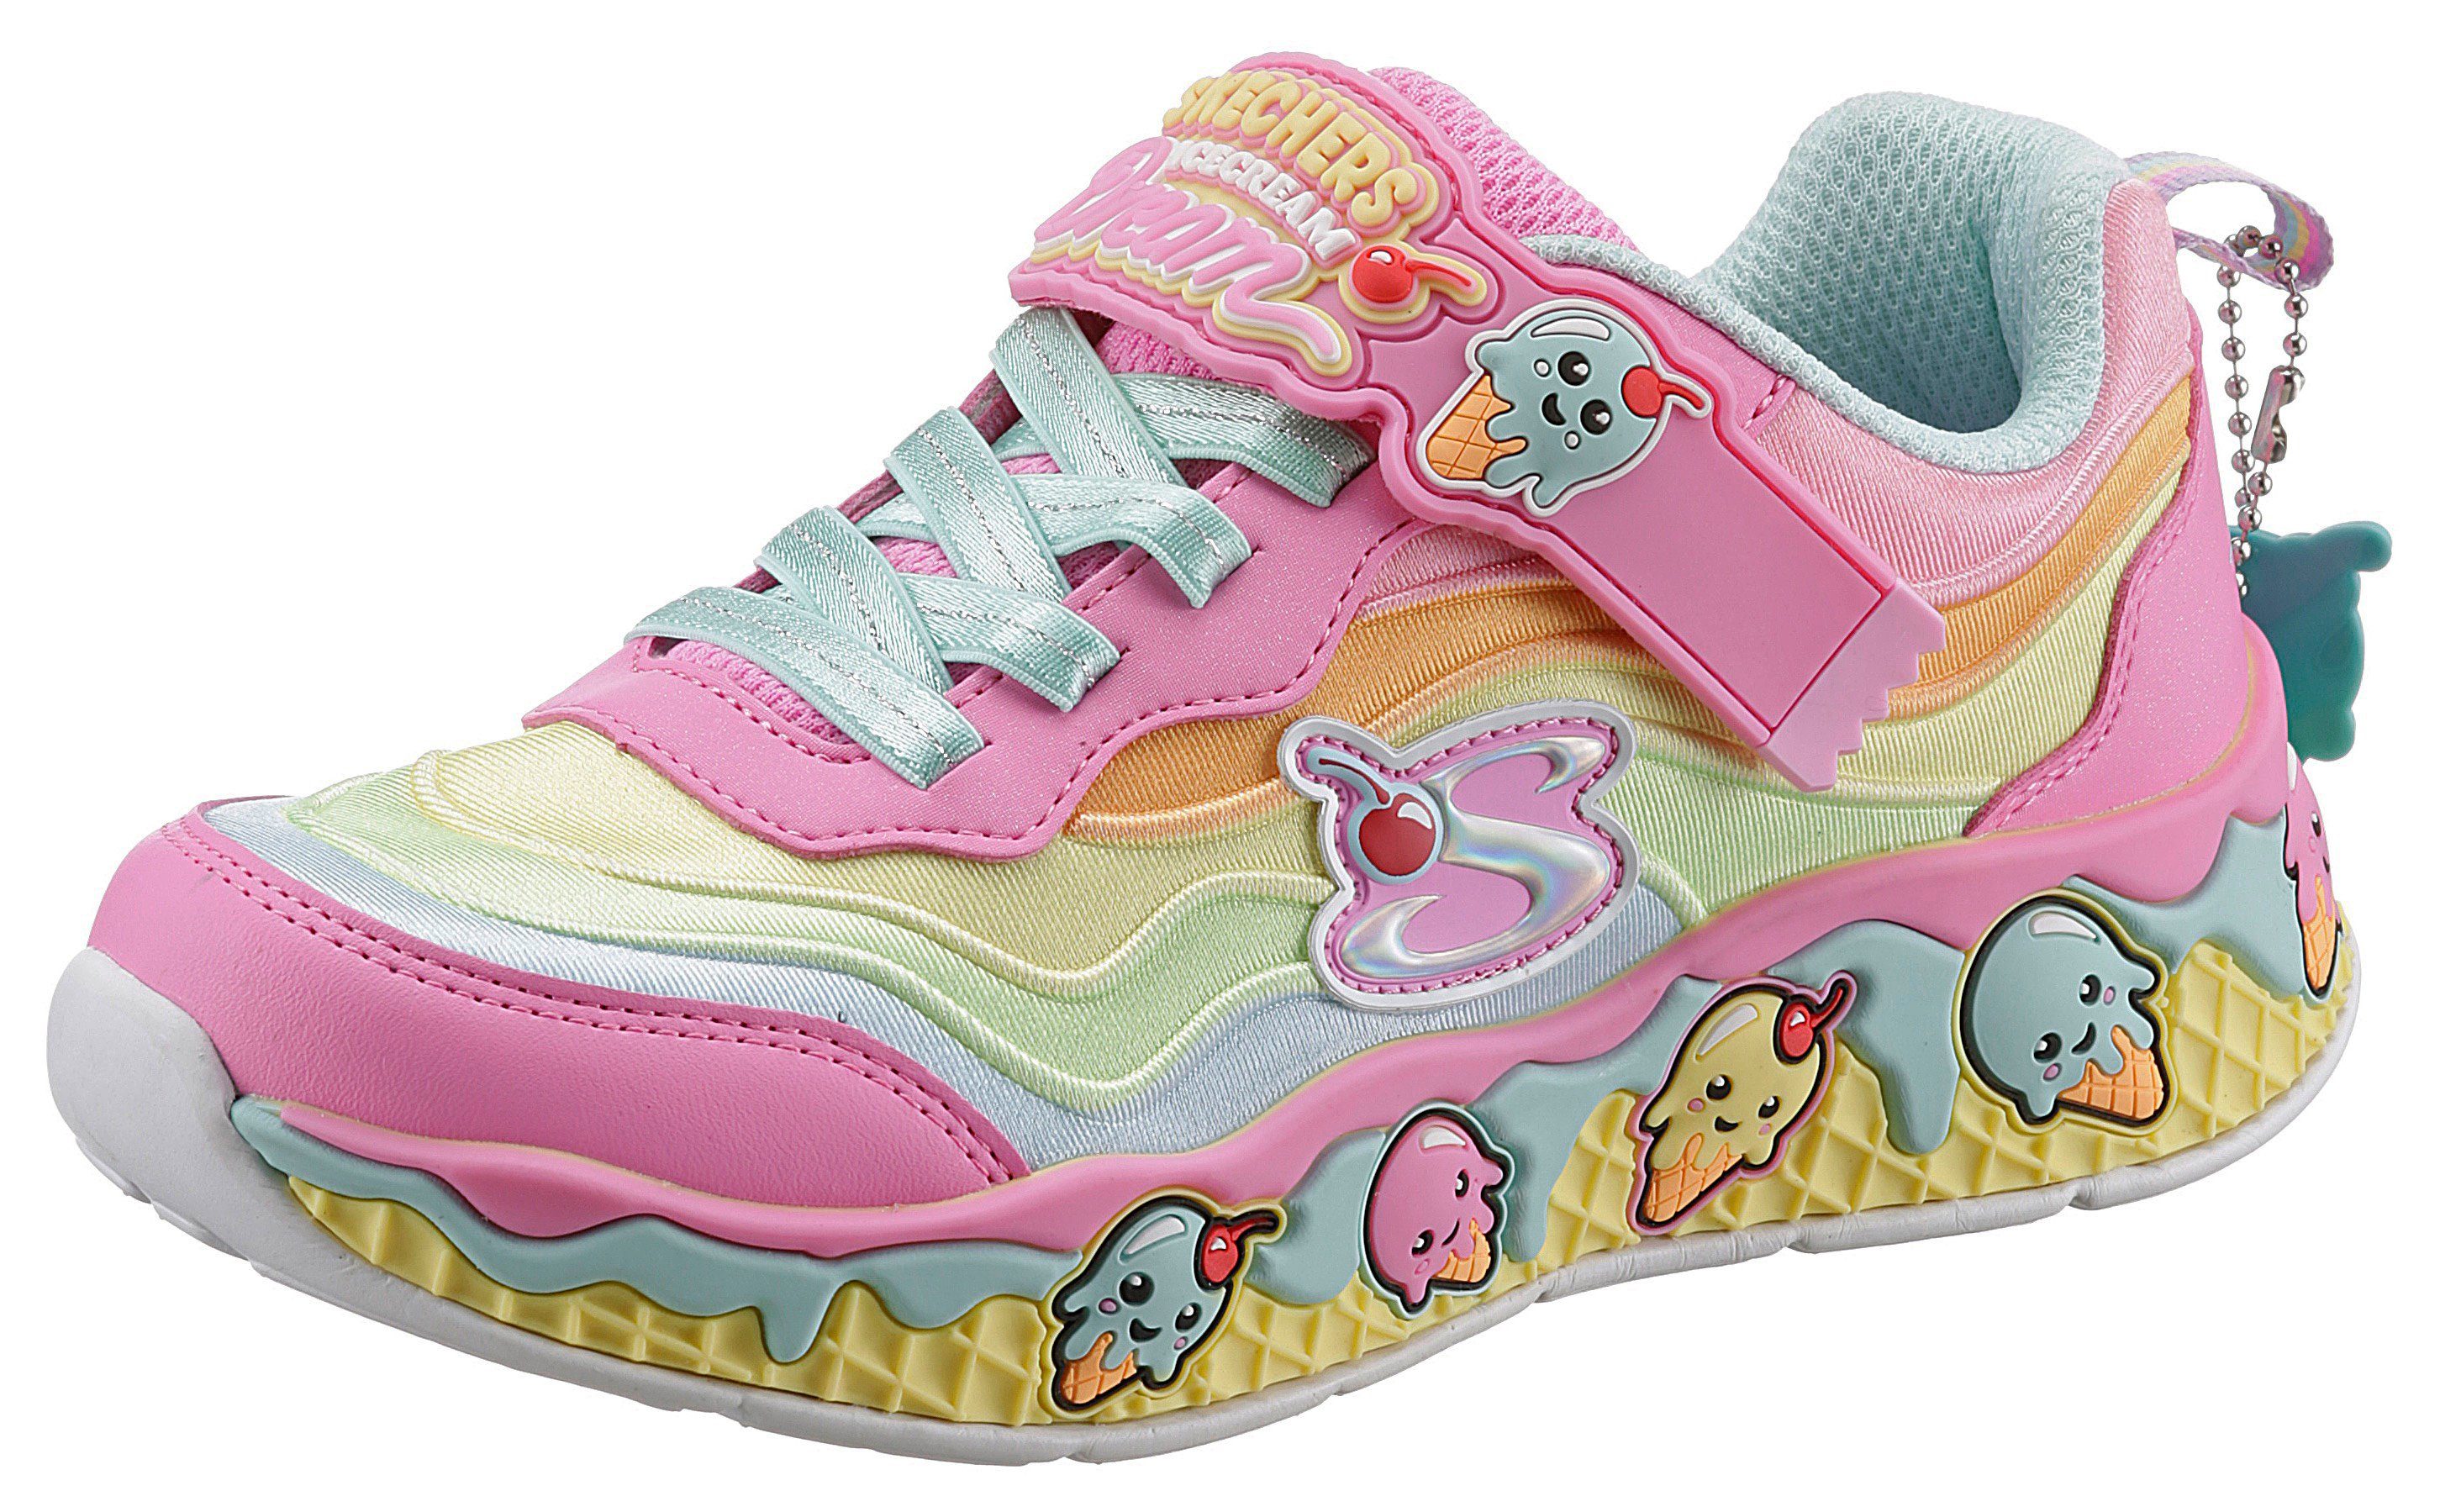 süßem Kids rosa-multi Sneaker mit SWEETIES- Eis-Motiv SUNDAE Skechers